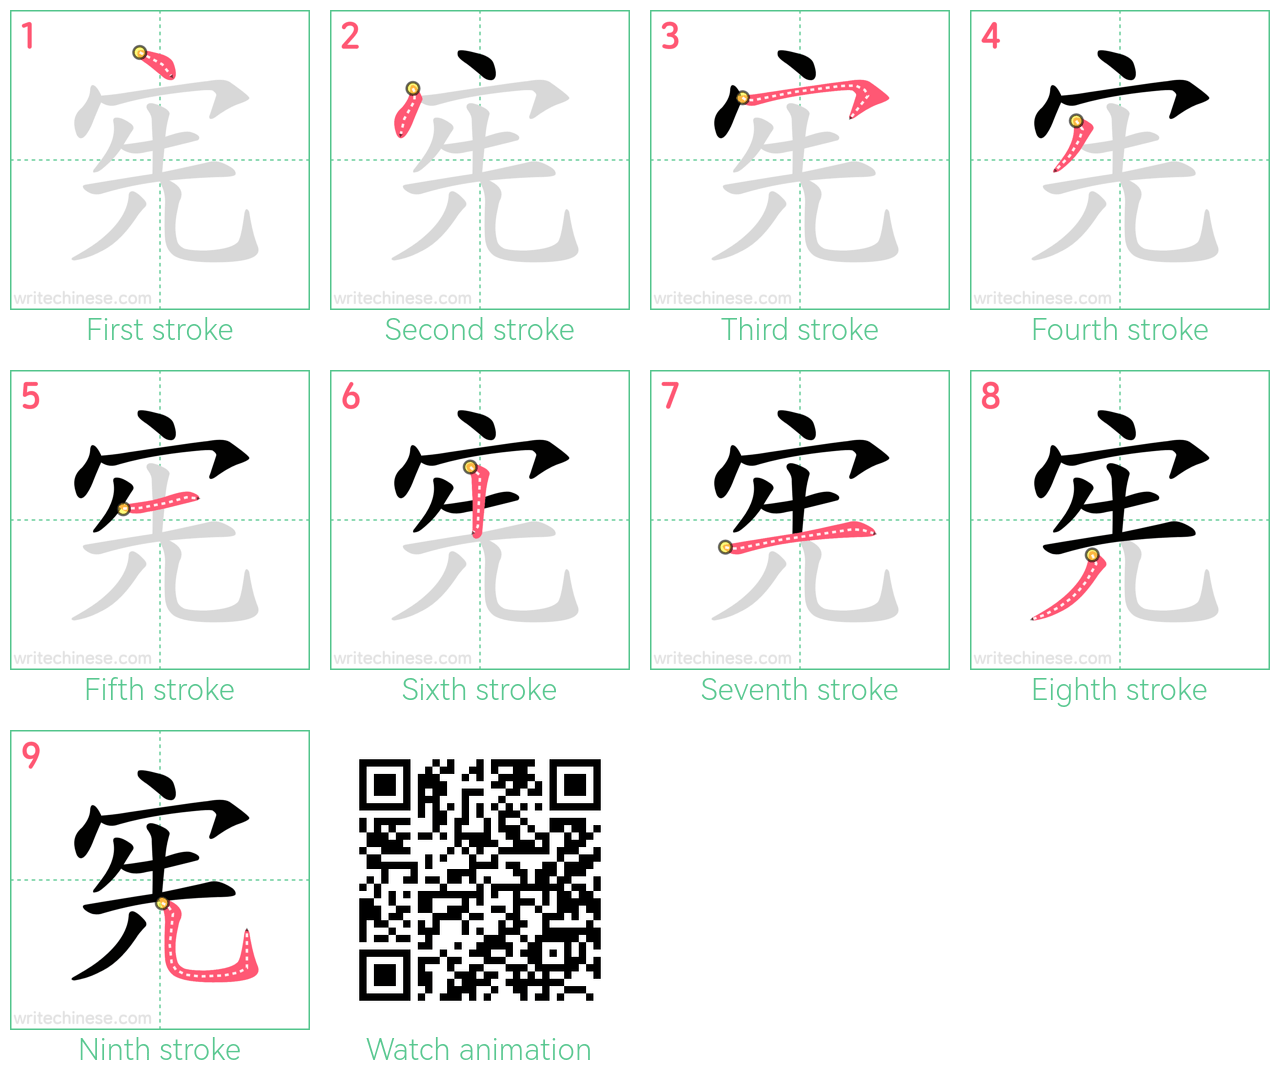 宪 step-by-step stroke order diagrams